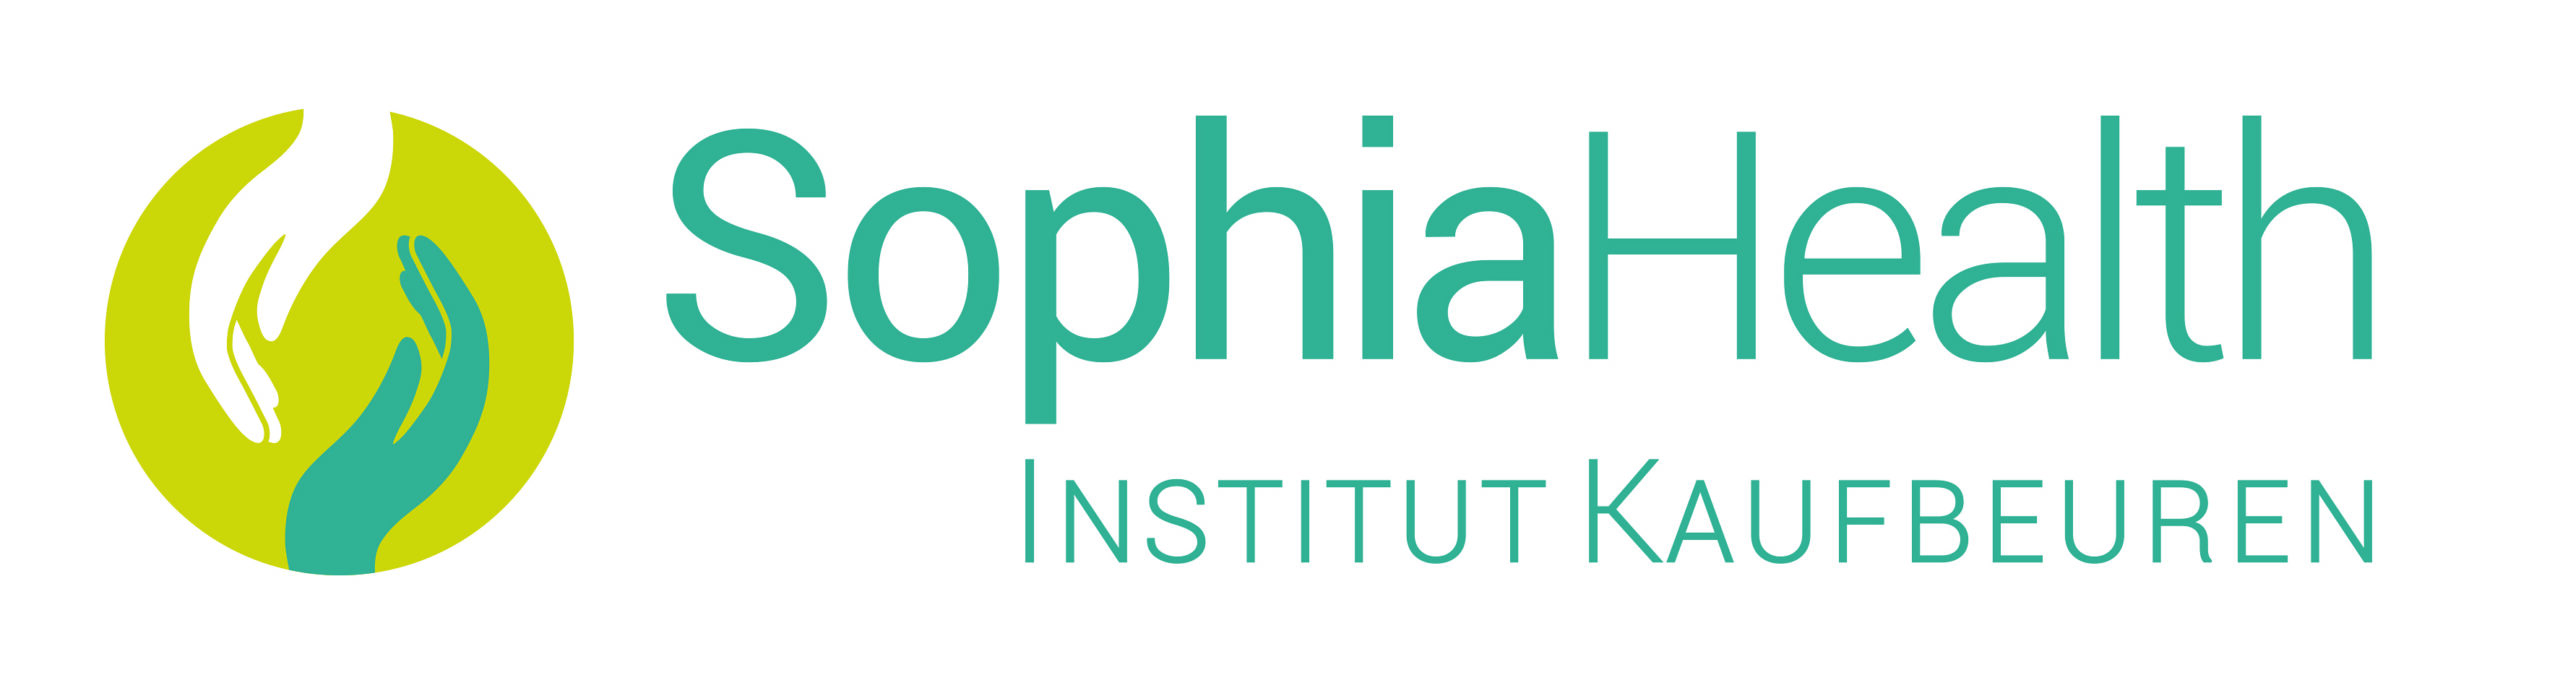 SophiaHealth – en